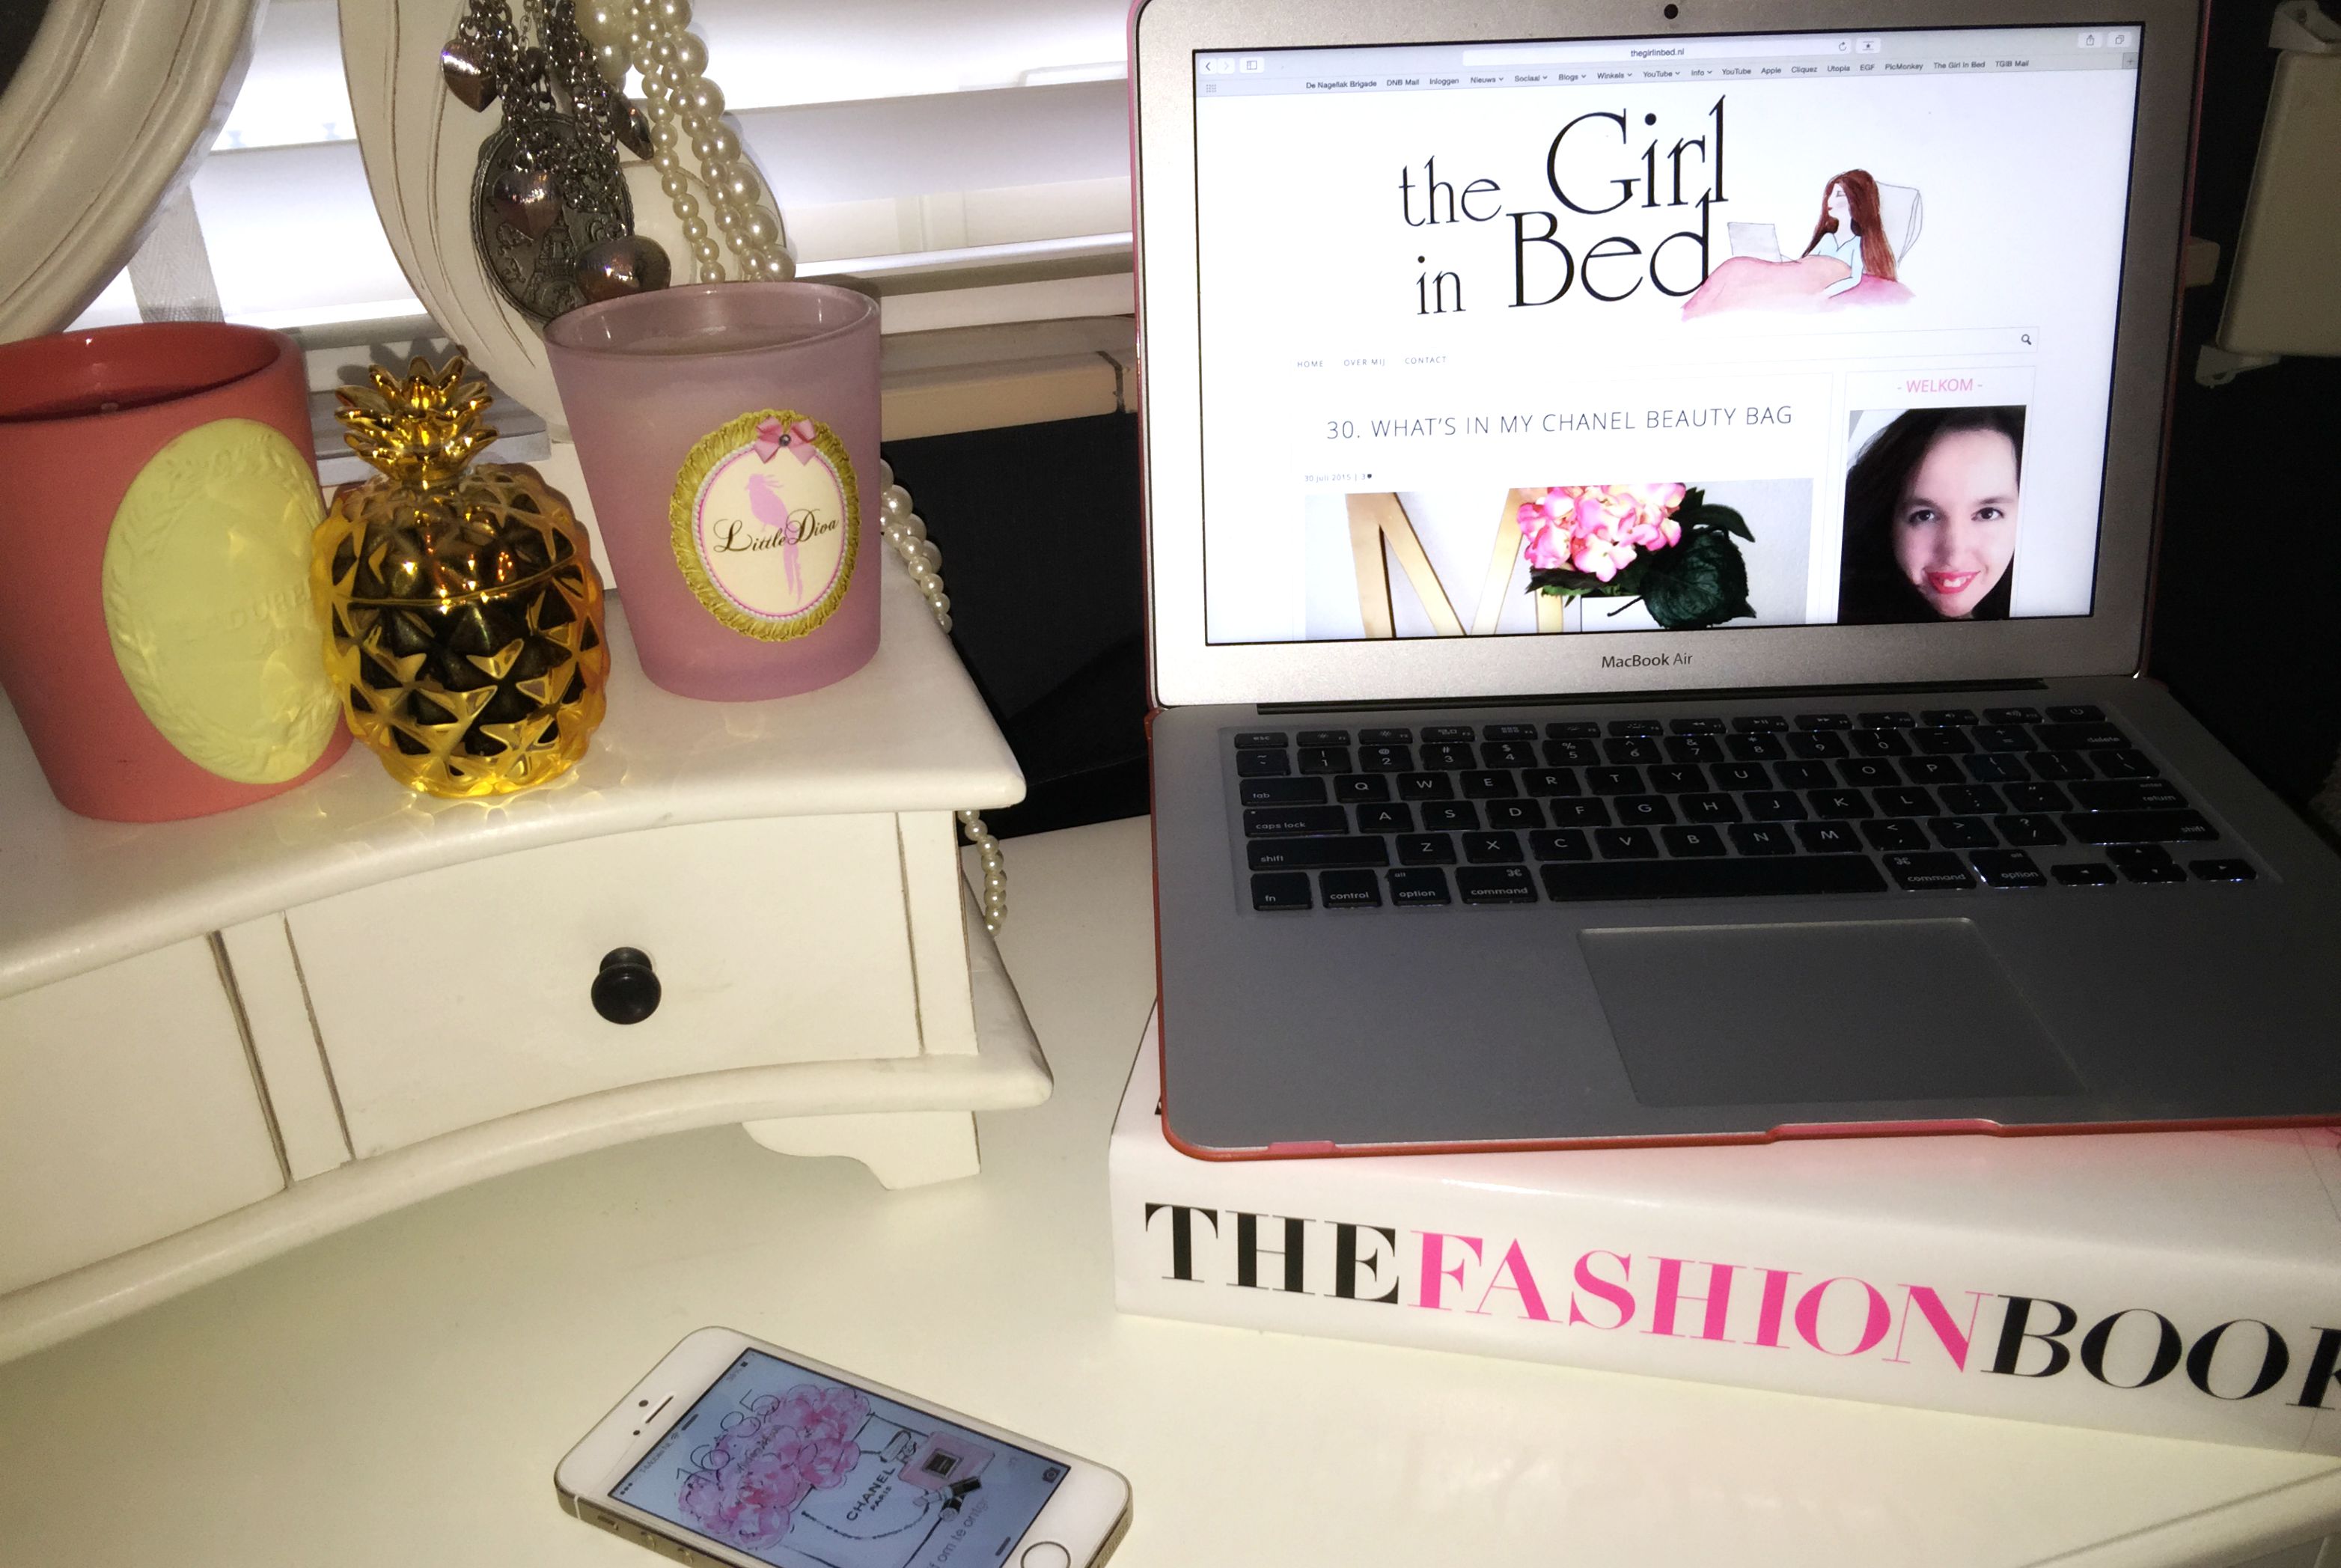 waarom blog ik eigenlijk the girl in bed 2